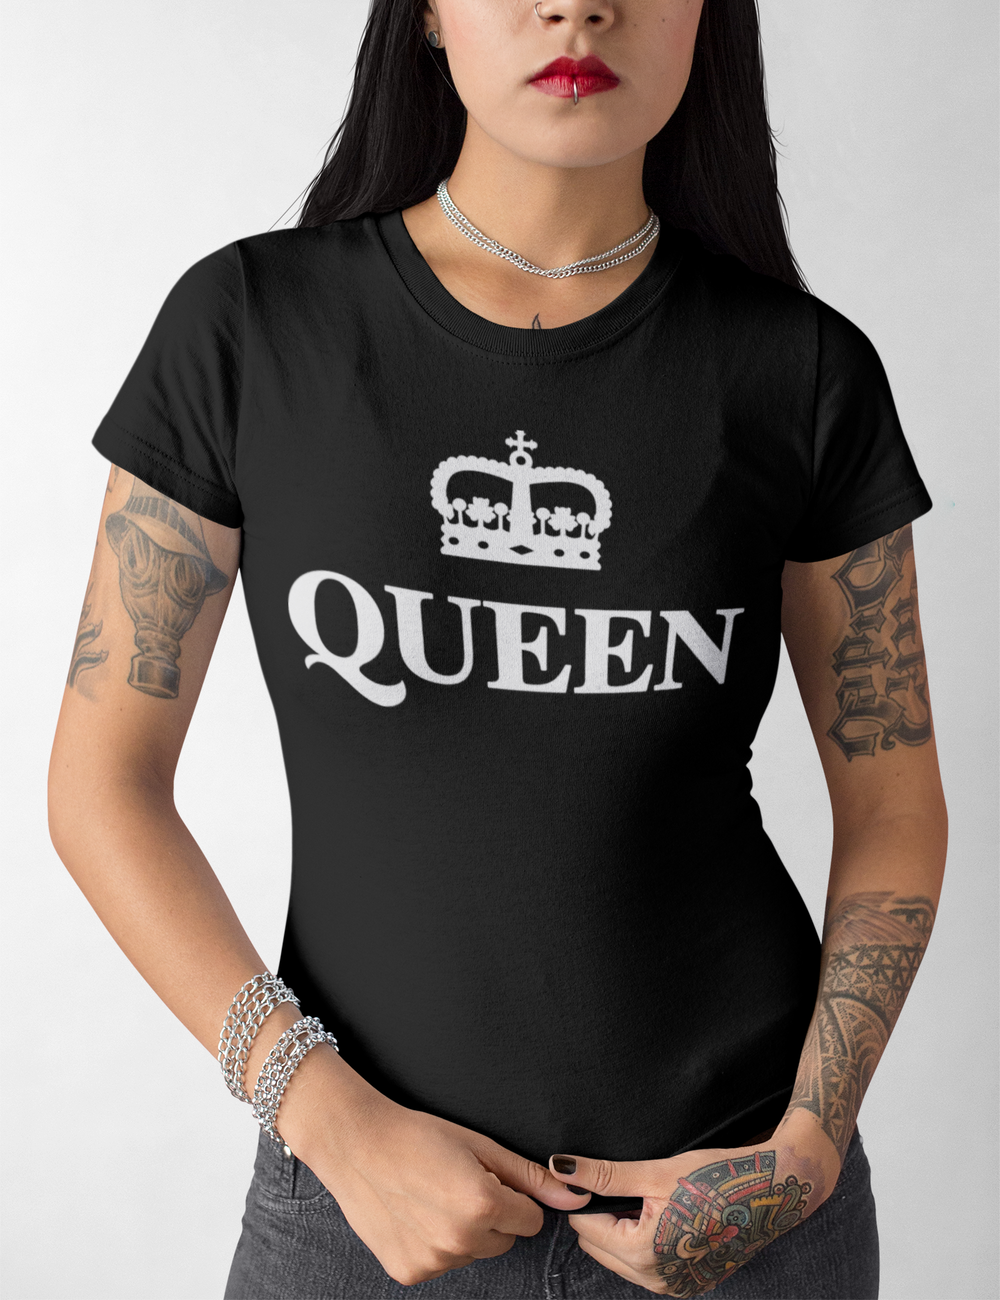 The Queen | Women's Cut T-Shirt OniTakai